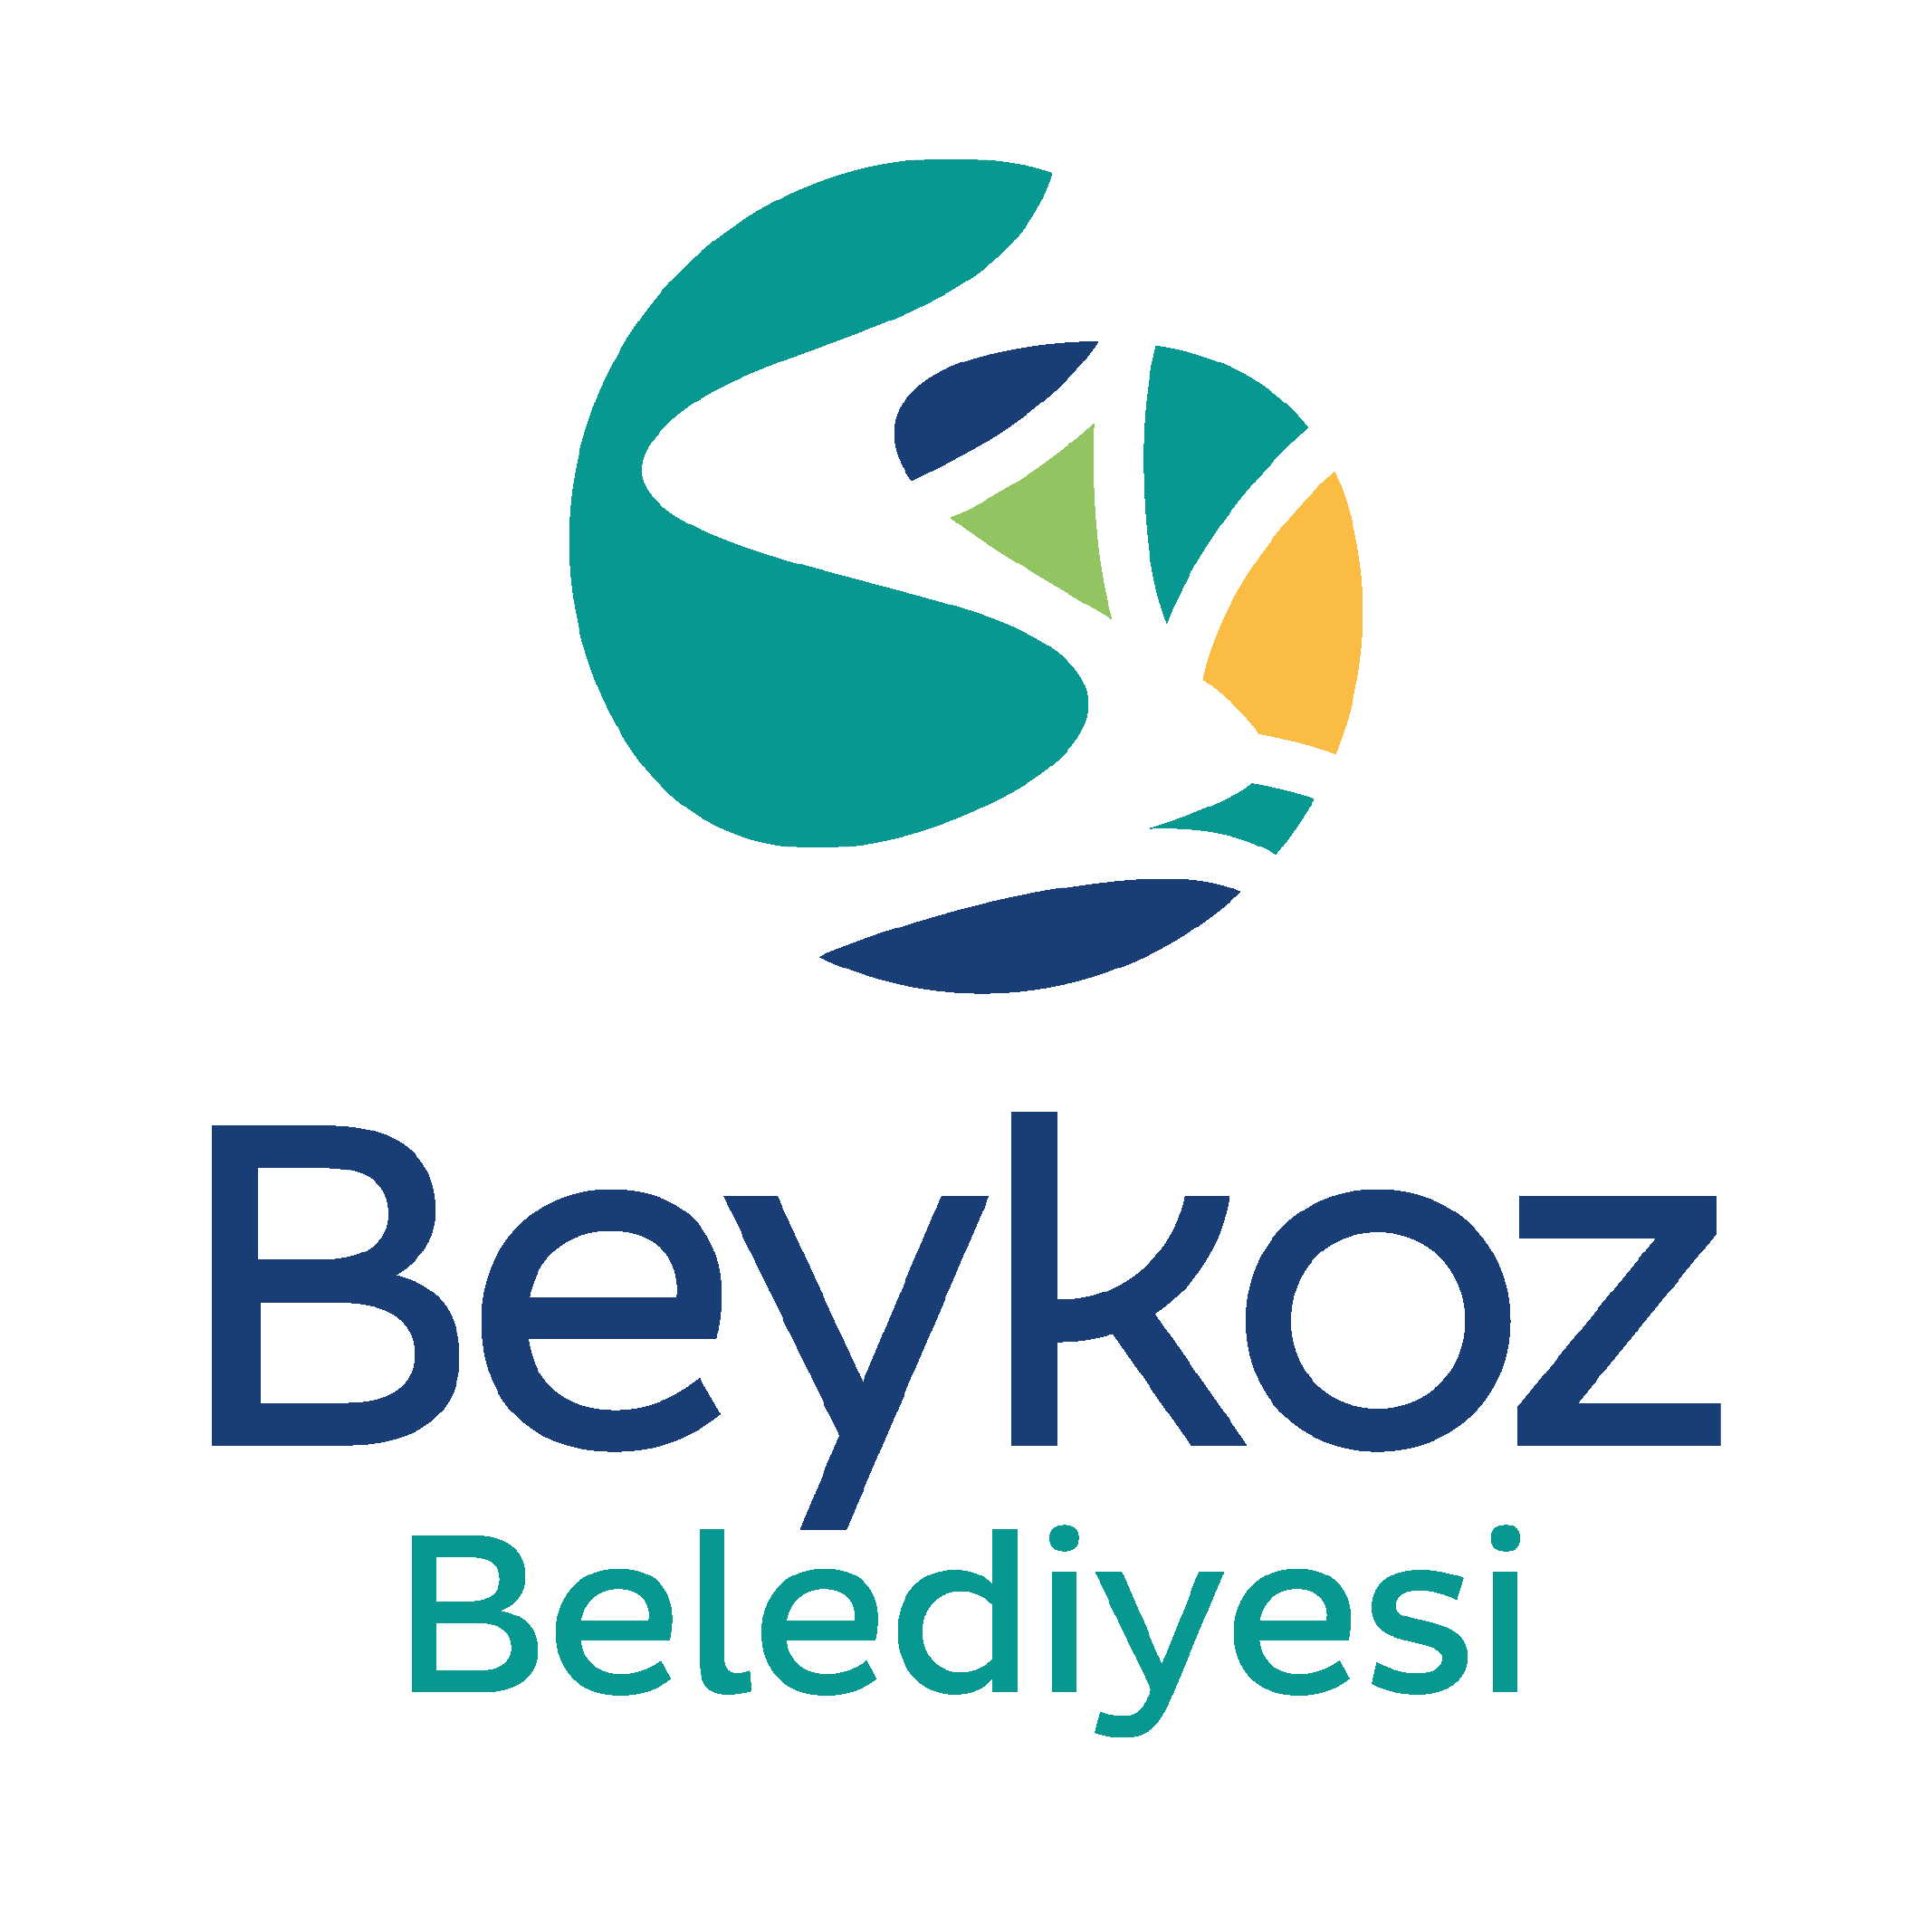 Beykoz-Belediyesi